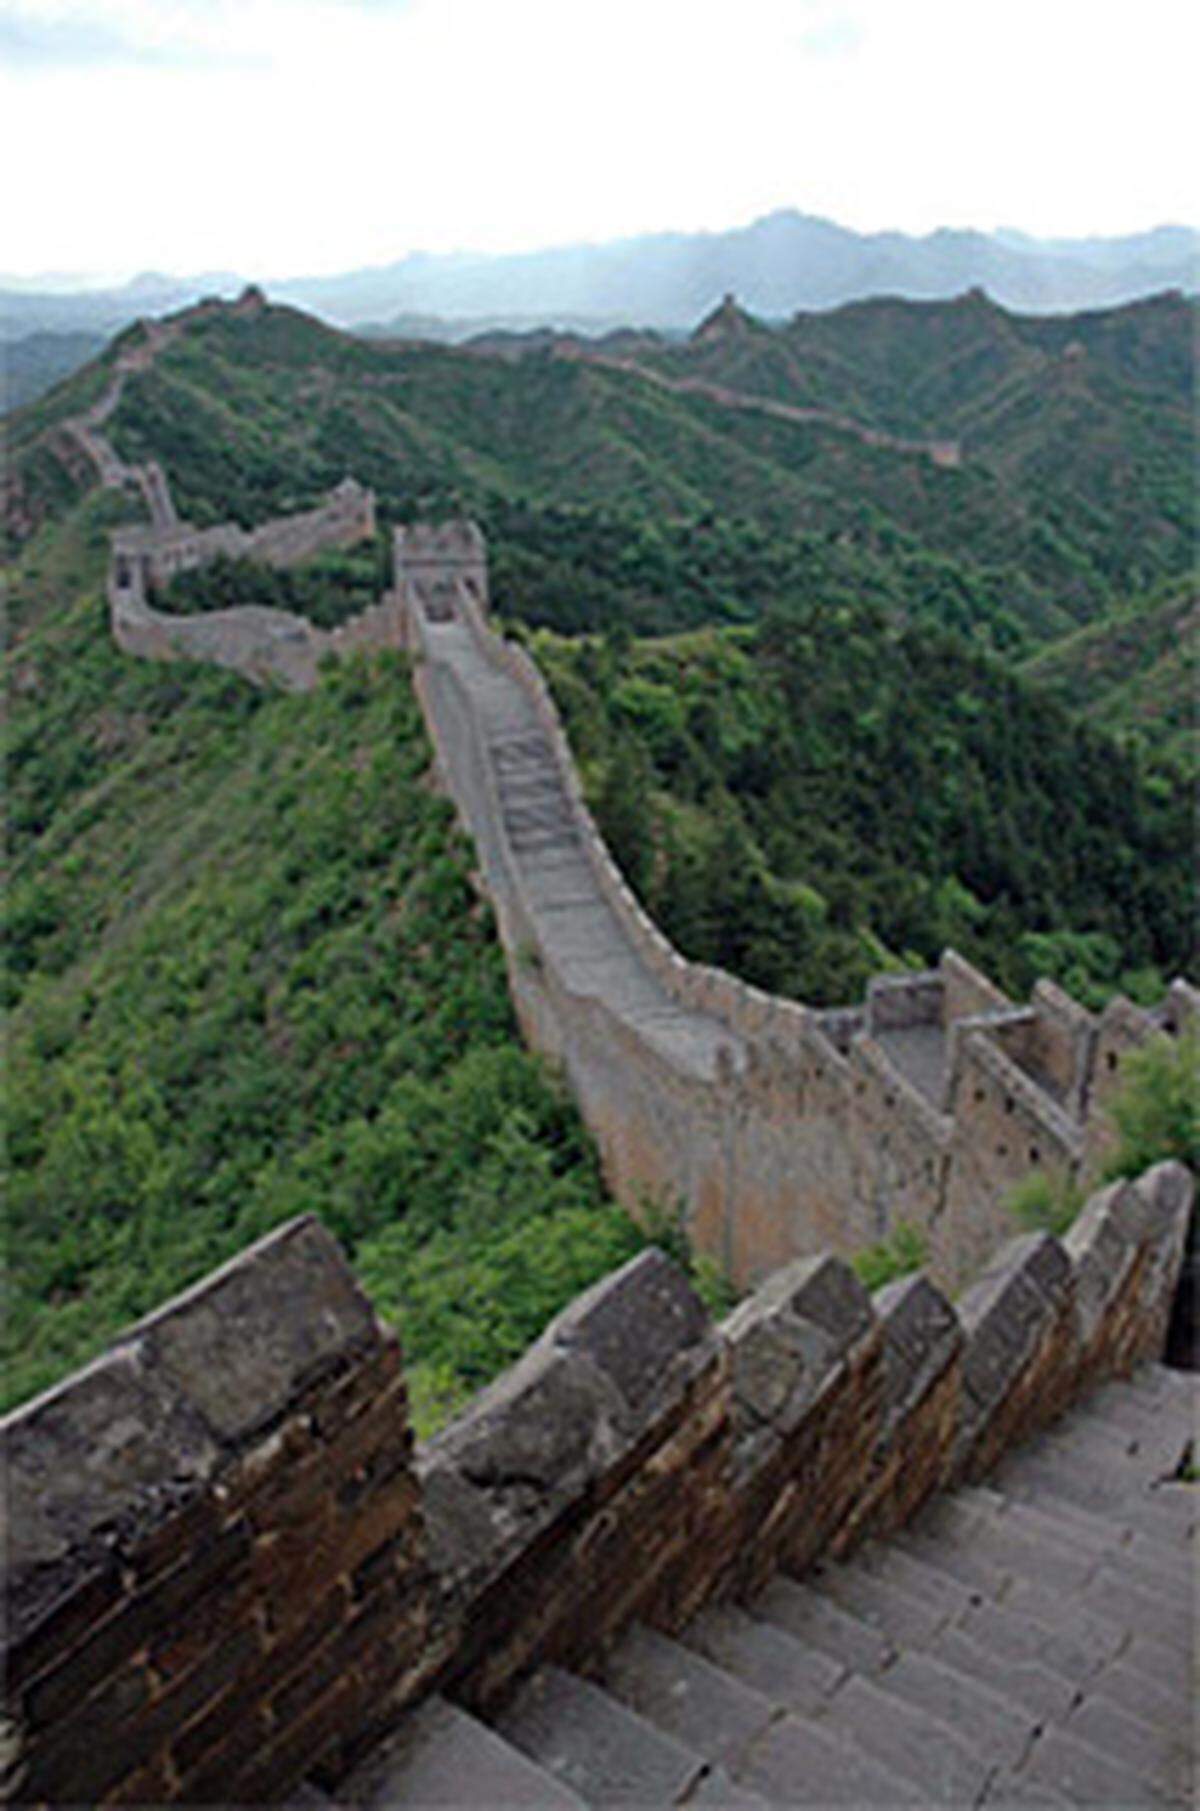 ... Grenzbefestigung der Welt? Die Hauptmauer der Chinesischen Mauer ist unglaubliche 2.400 km lang. Zweifellos am längsten?